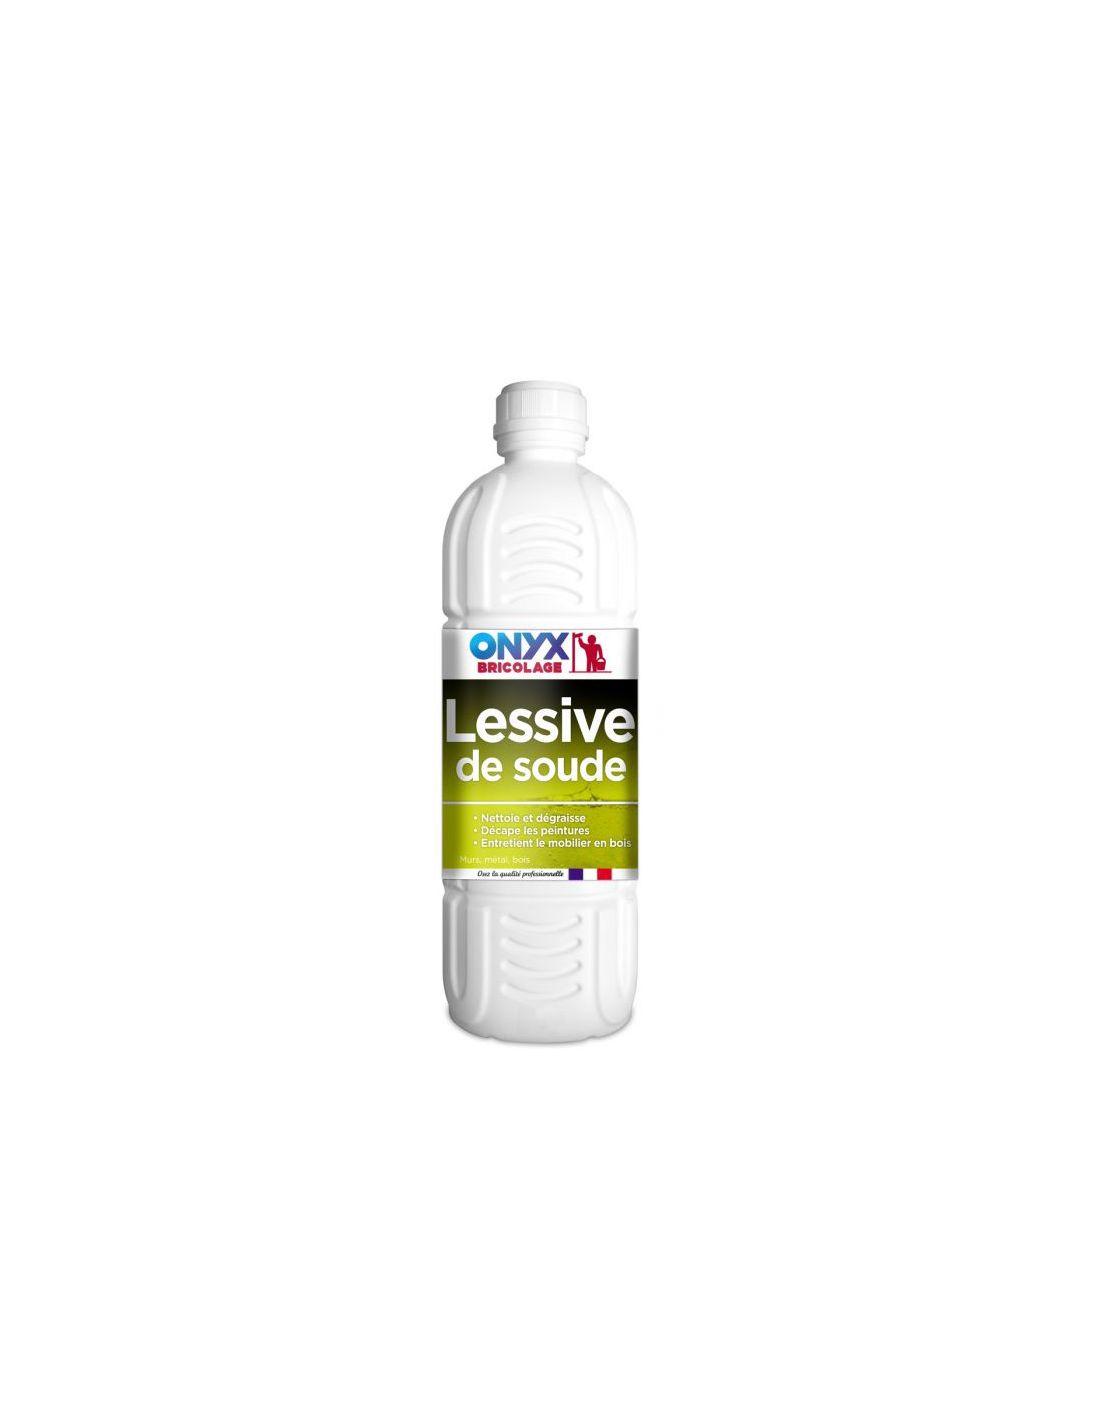 X-Tra - Lessive liquide Total 25 doses (1,25L) commandez en ligne